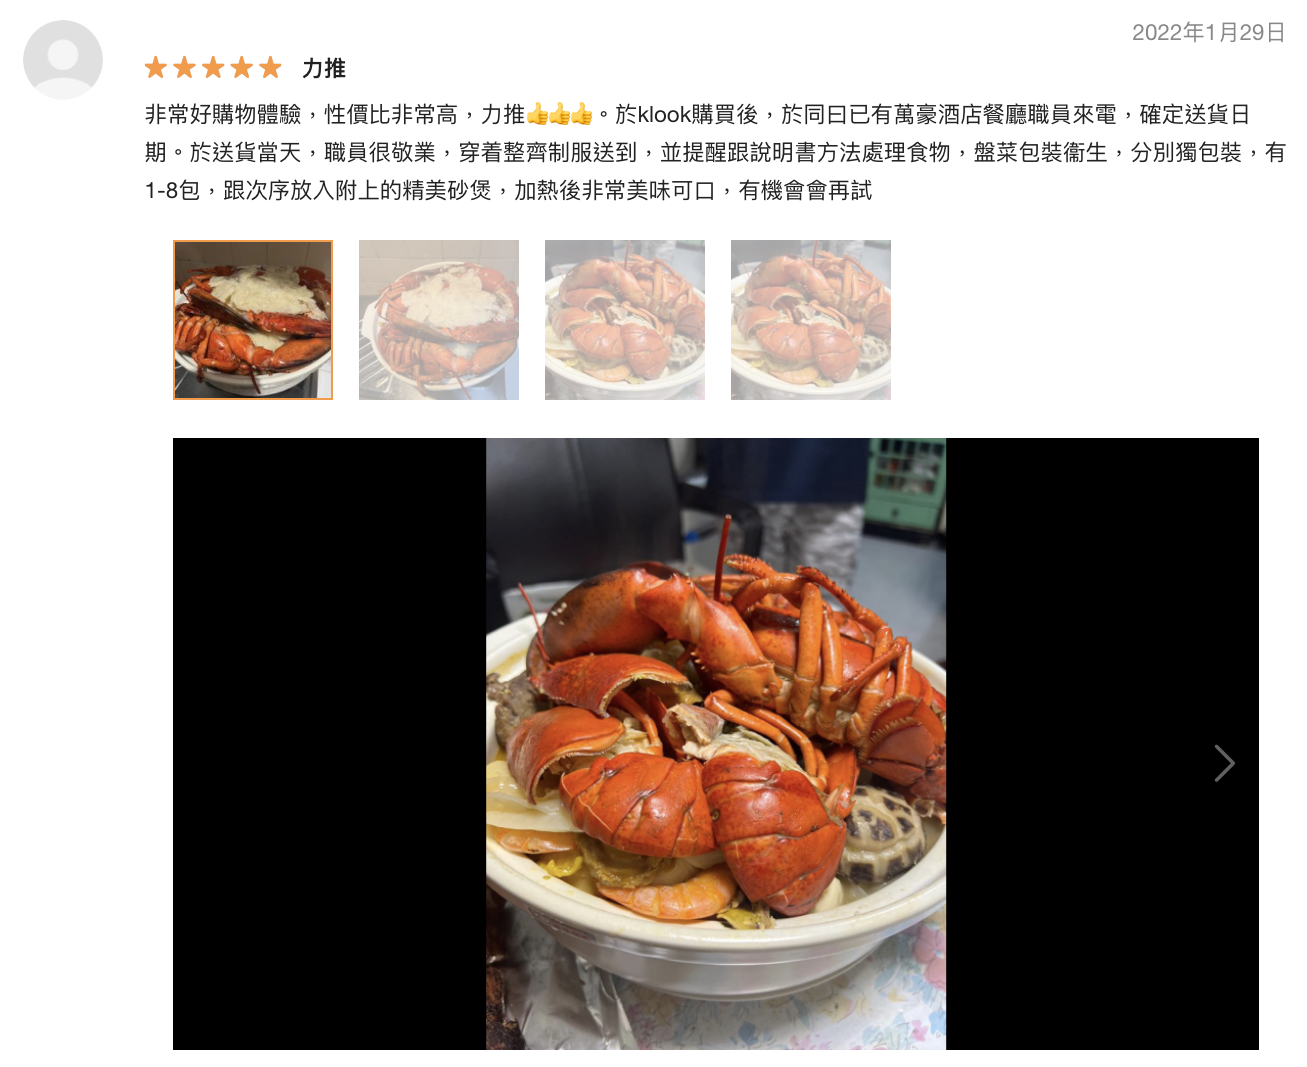 海洋公園萬豪酒店 $1688 DIY 四人盆菜